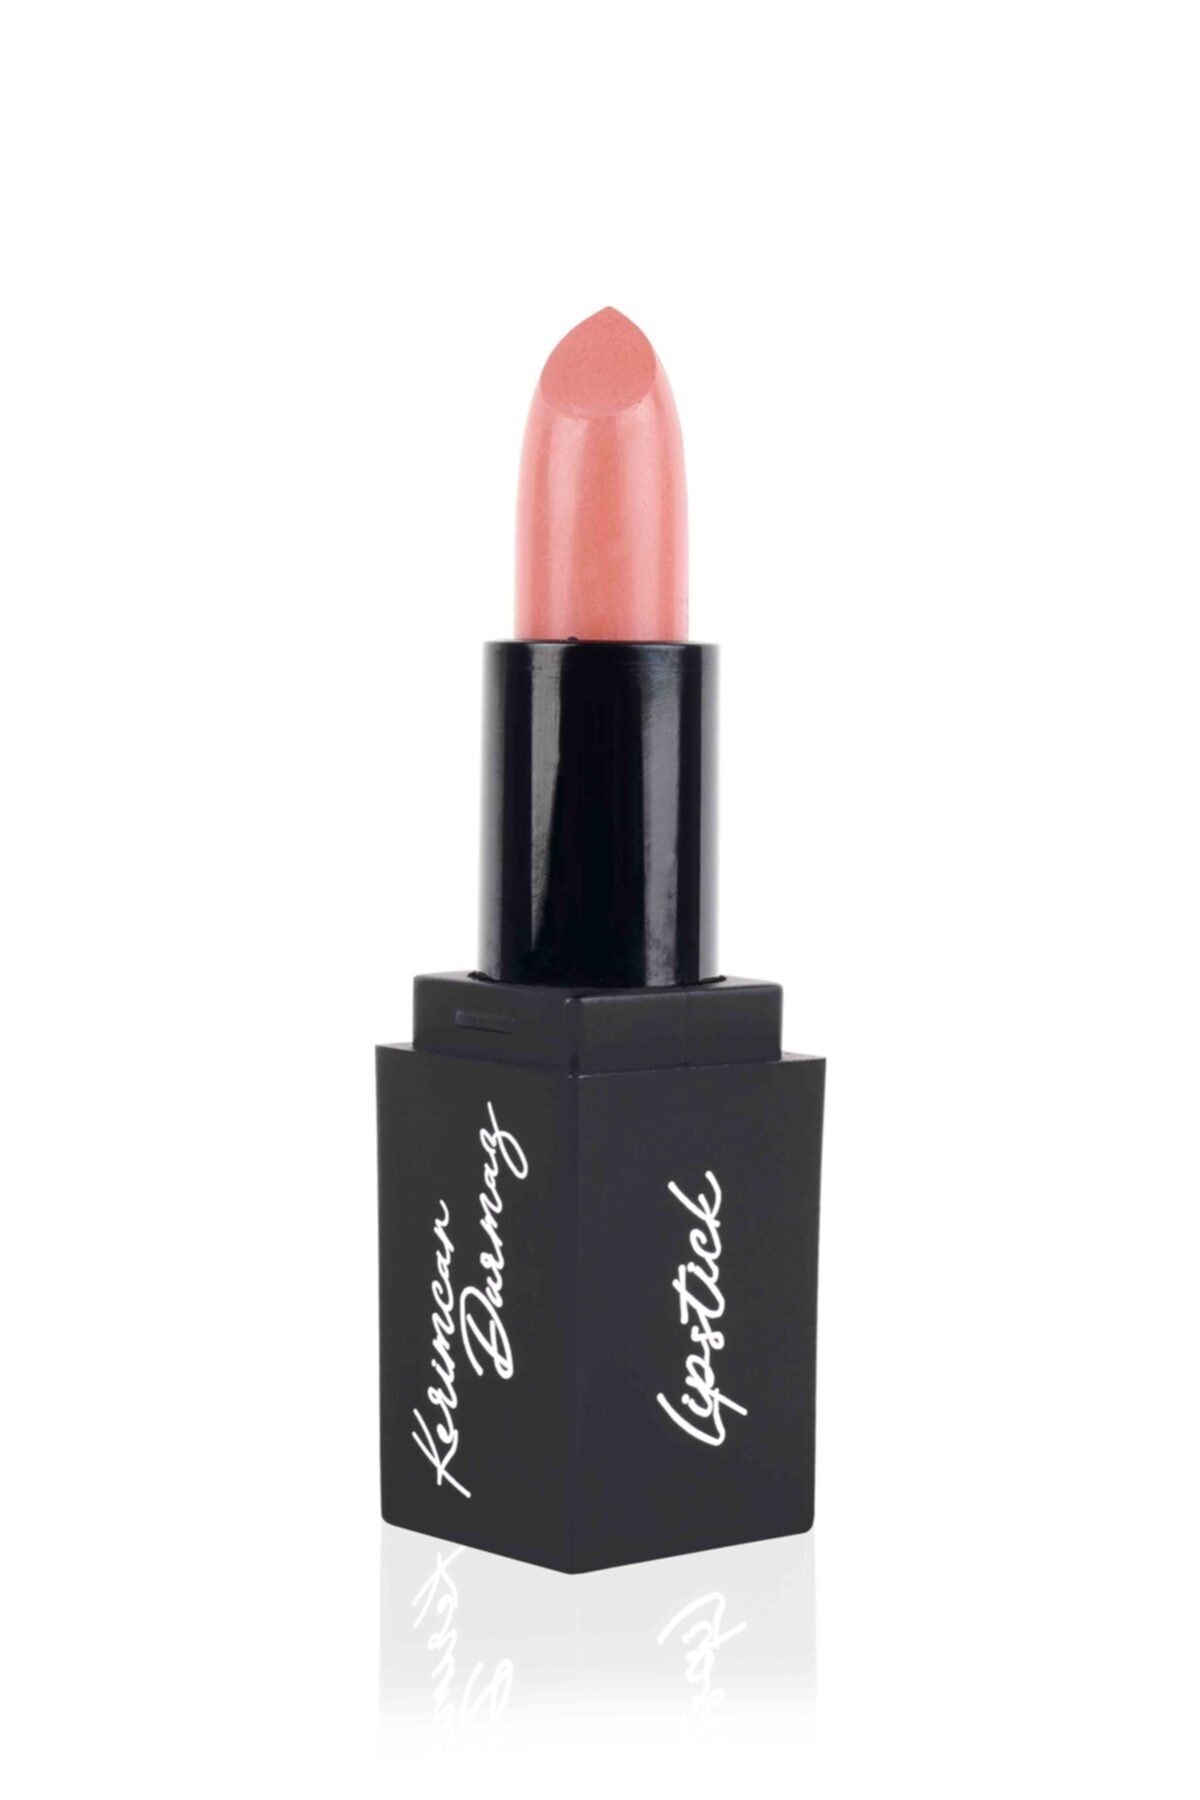 kerimcandurmazcosmetics Peşimde Pink Lambo Lipstick